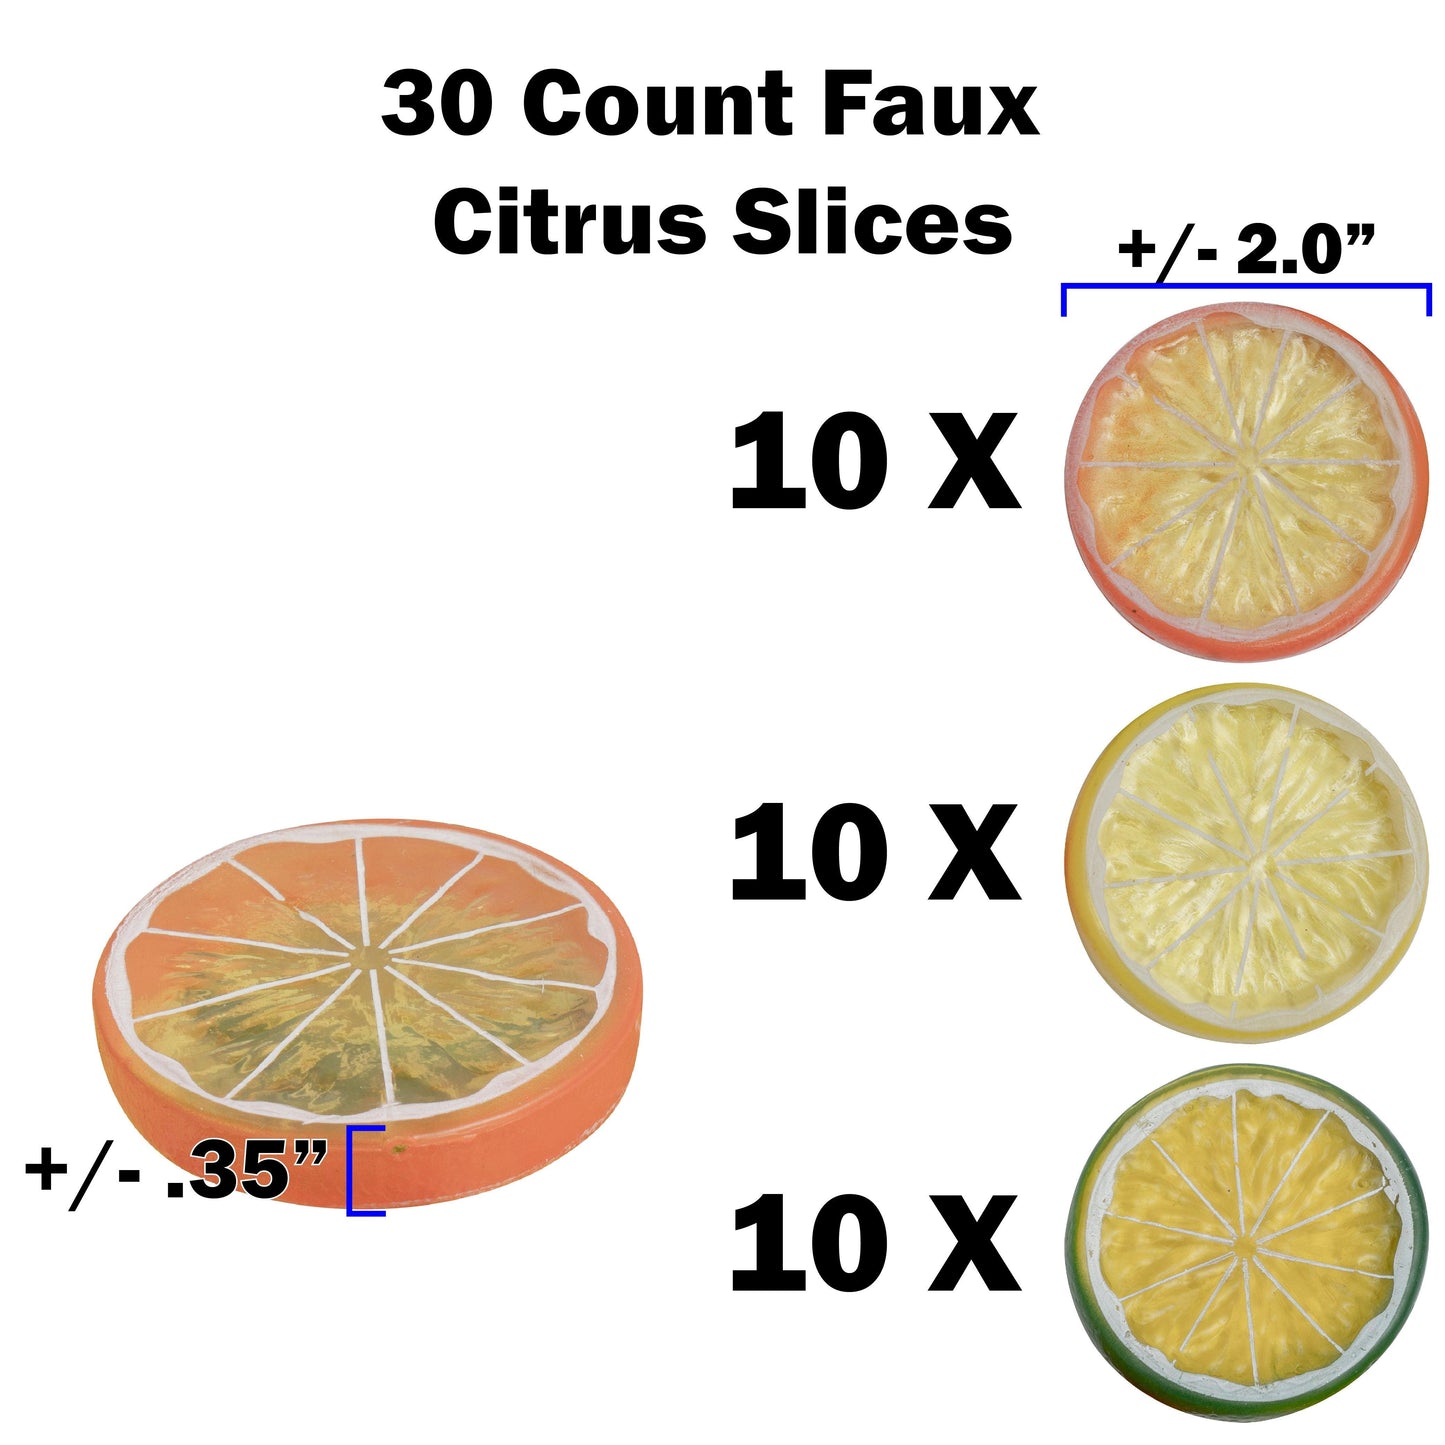 Faux Citrus Slices